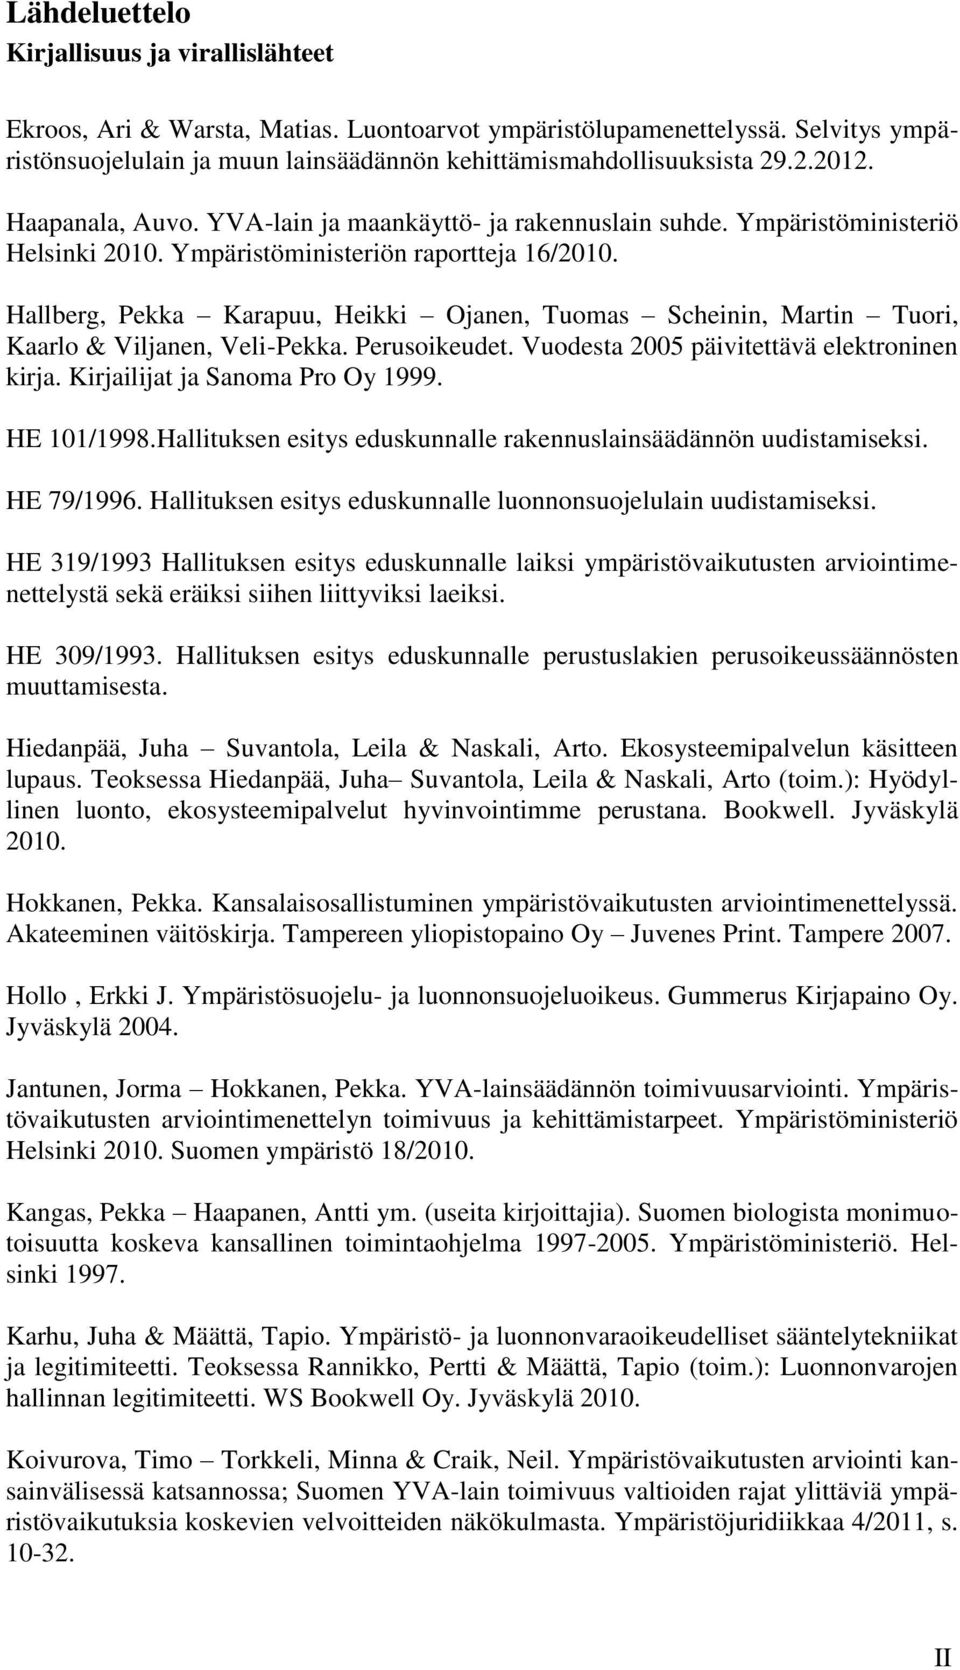 Hallberg, Pekka Karapuu, Heikki Ojanen, Tuomas Scheinin, Martin Tuori, Kaarlo & Viljanen, Veli-Pekka. Perusoikeudet. Vuodesta 2005 päivitettävä elektroninen kirja. Kirjailijat ja Sanoma Pro Oy 1999.